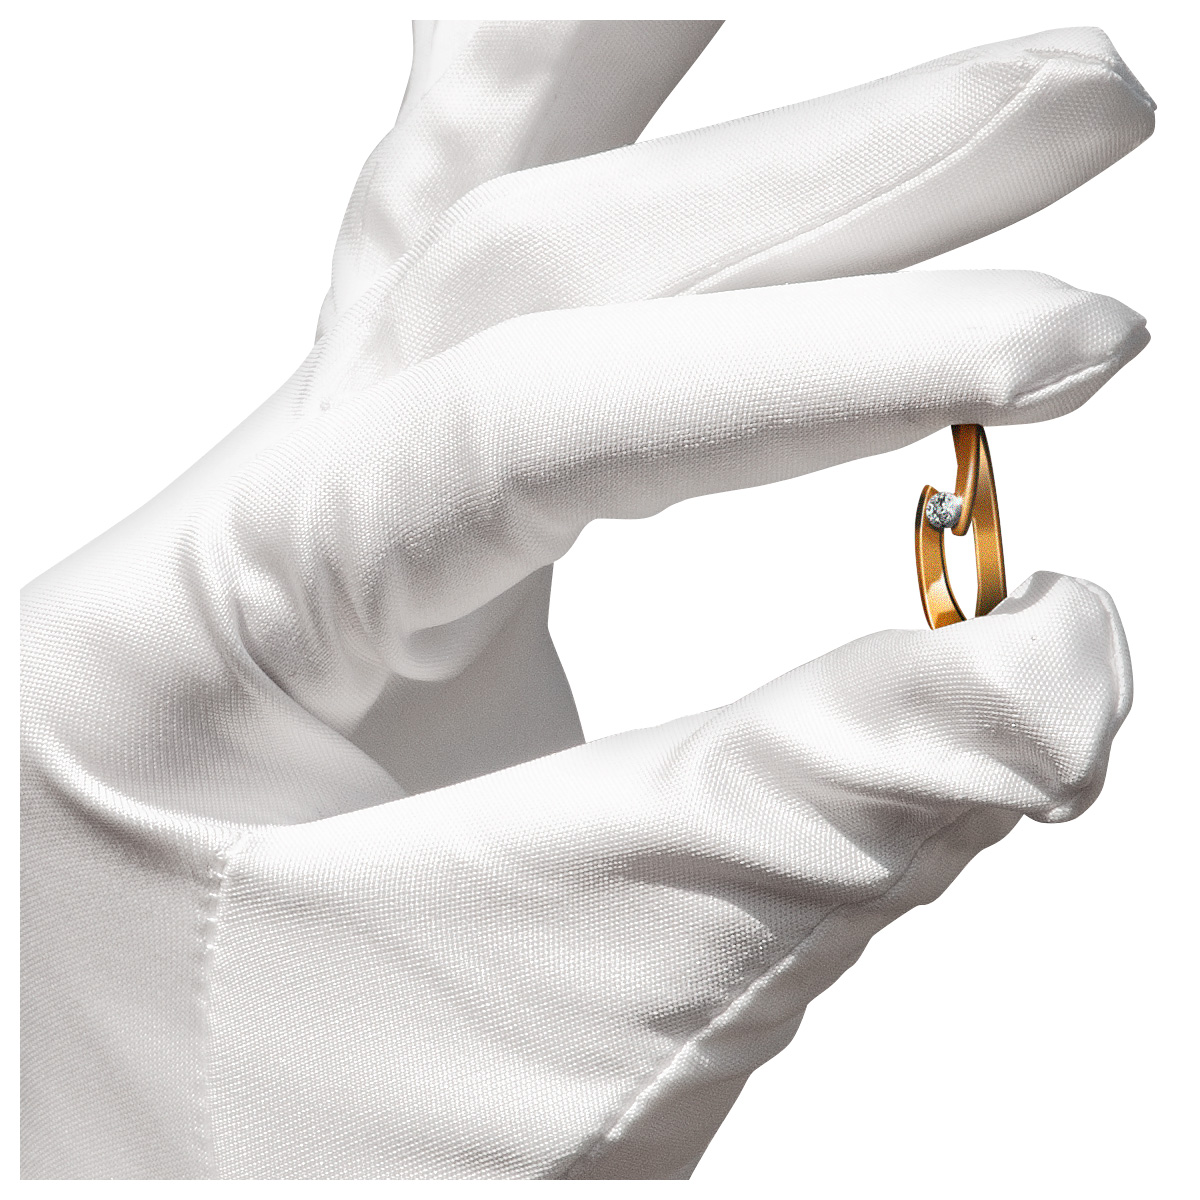 Mikrofaser Handschuh-Paar Haute Couture, weiß, Größe M
